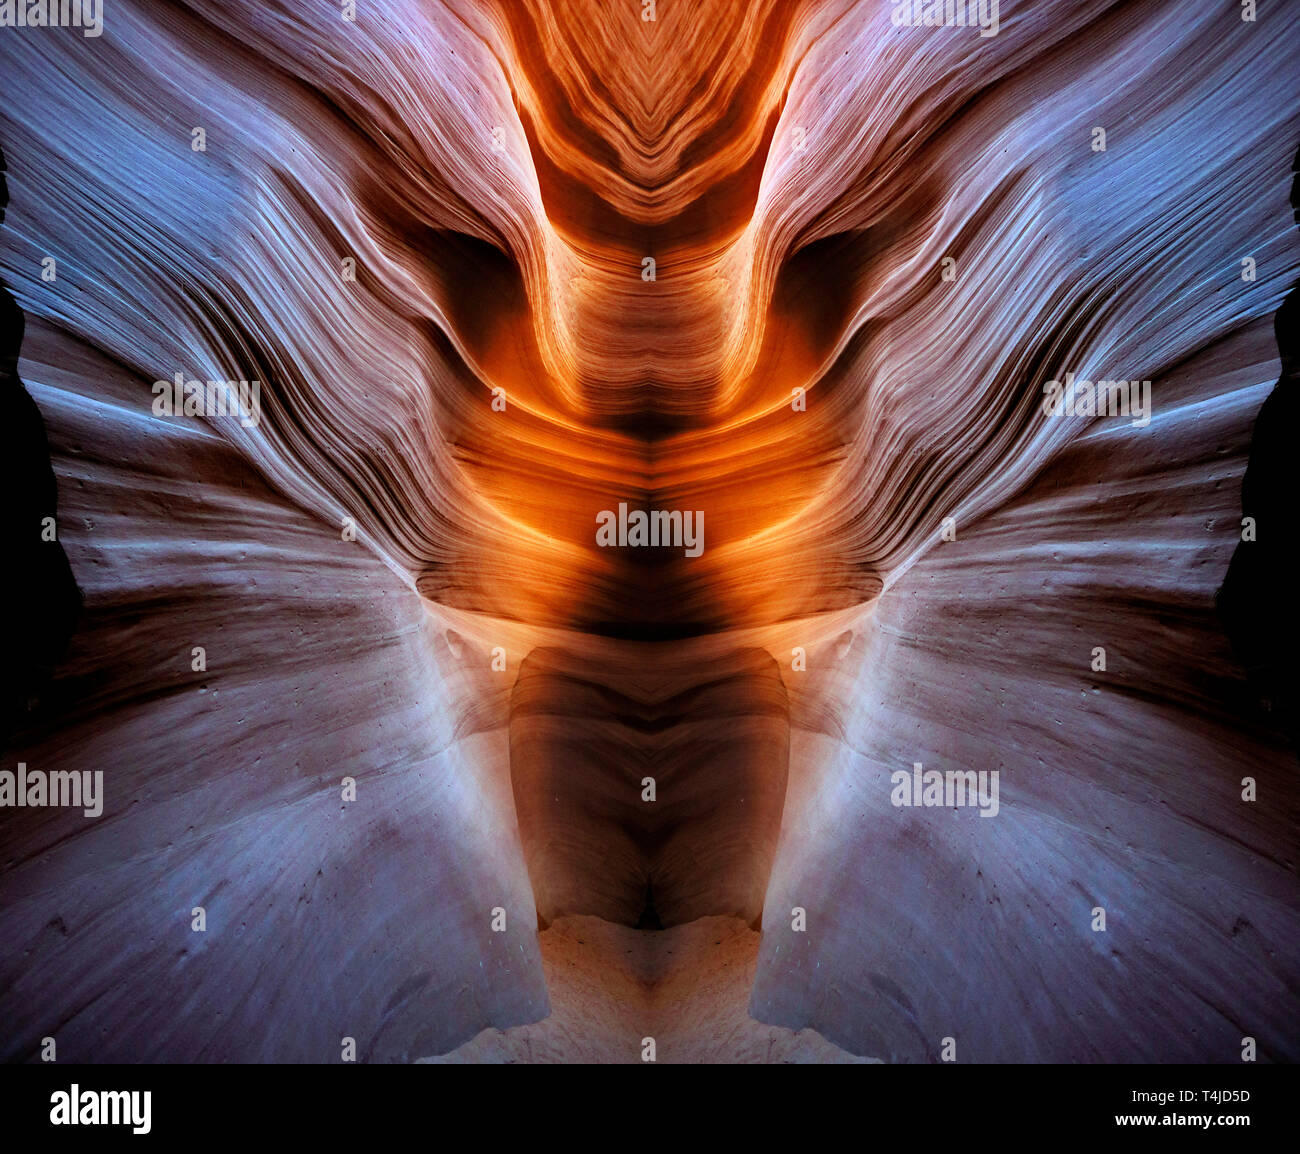 Una fluidità slot canyon di Arizona. Questa immagine è stata creata dalla combinazione di due immagini simmetriche, invertendo una metà per produrre un design unico. Foto Stock